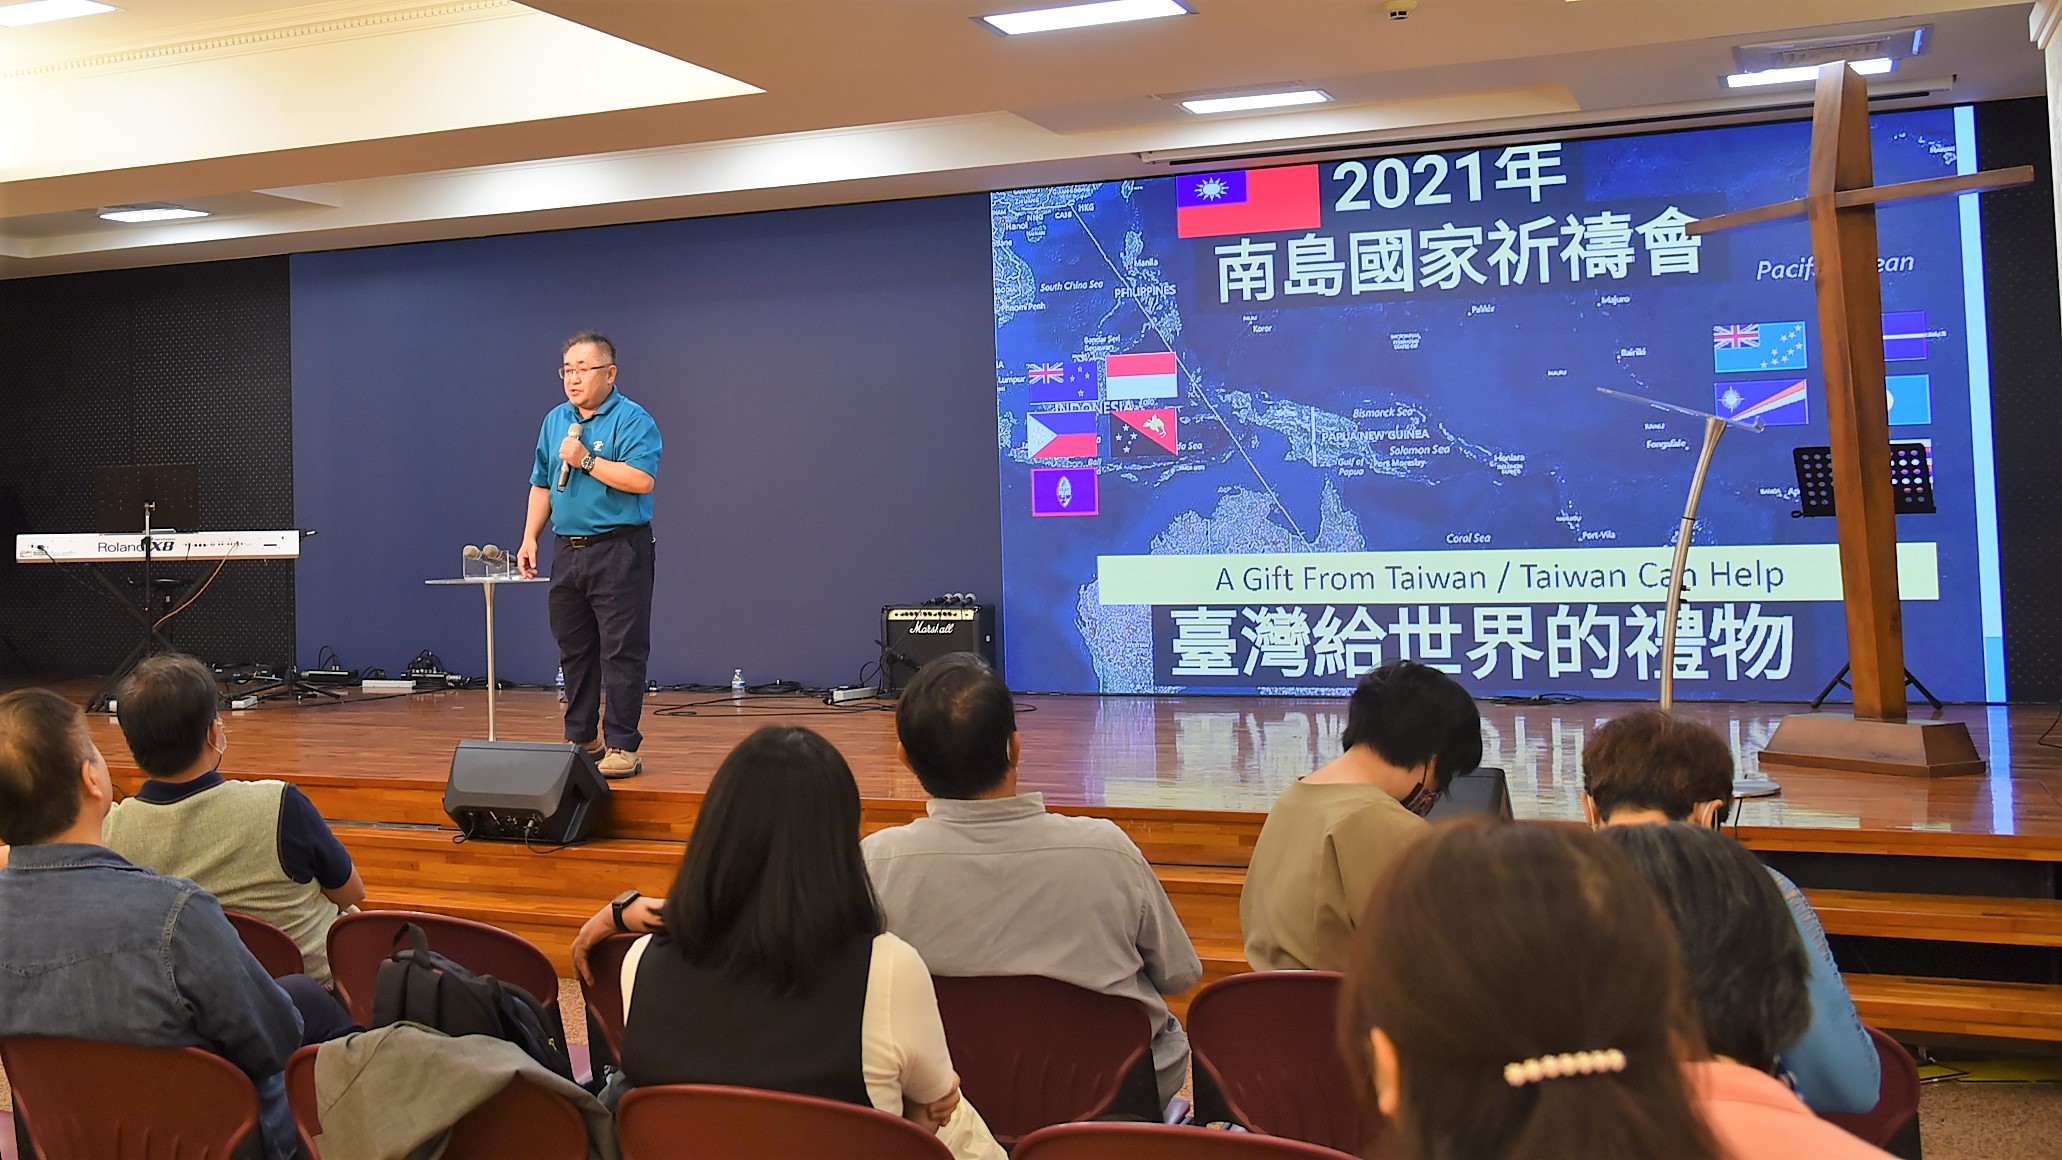 「2021南島國家祈禱會」一共邀請十一個區域參與，含台灣共十二區域。(謝宜汝攝影)